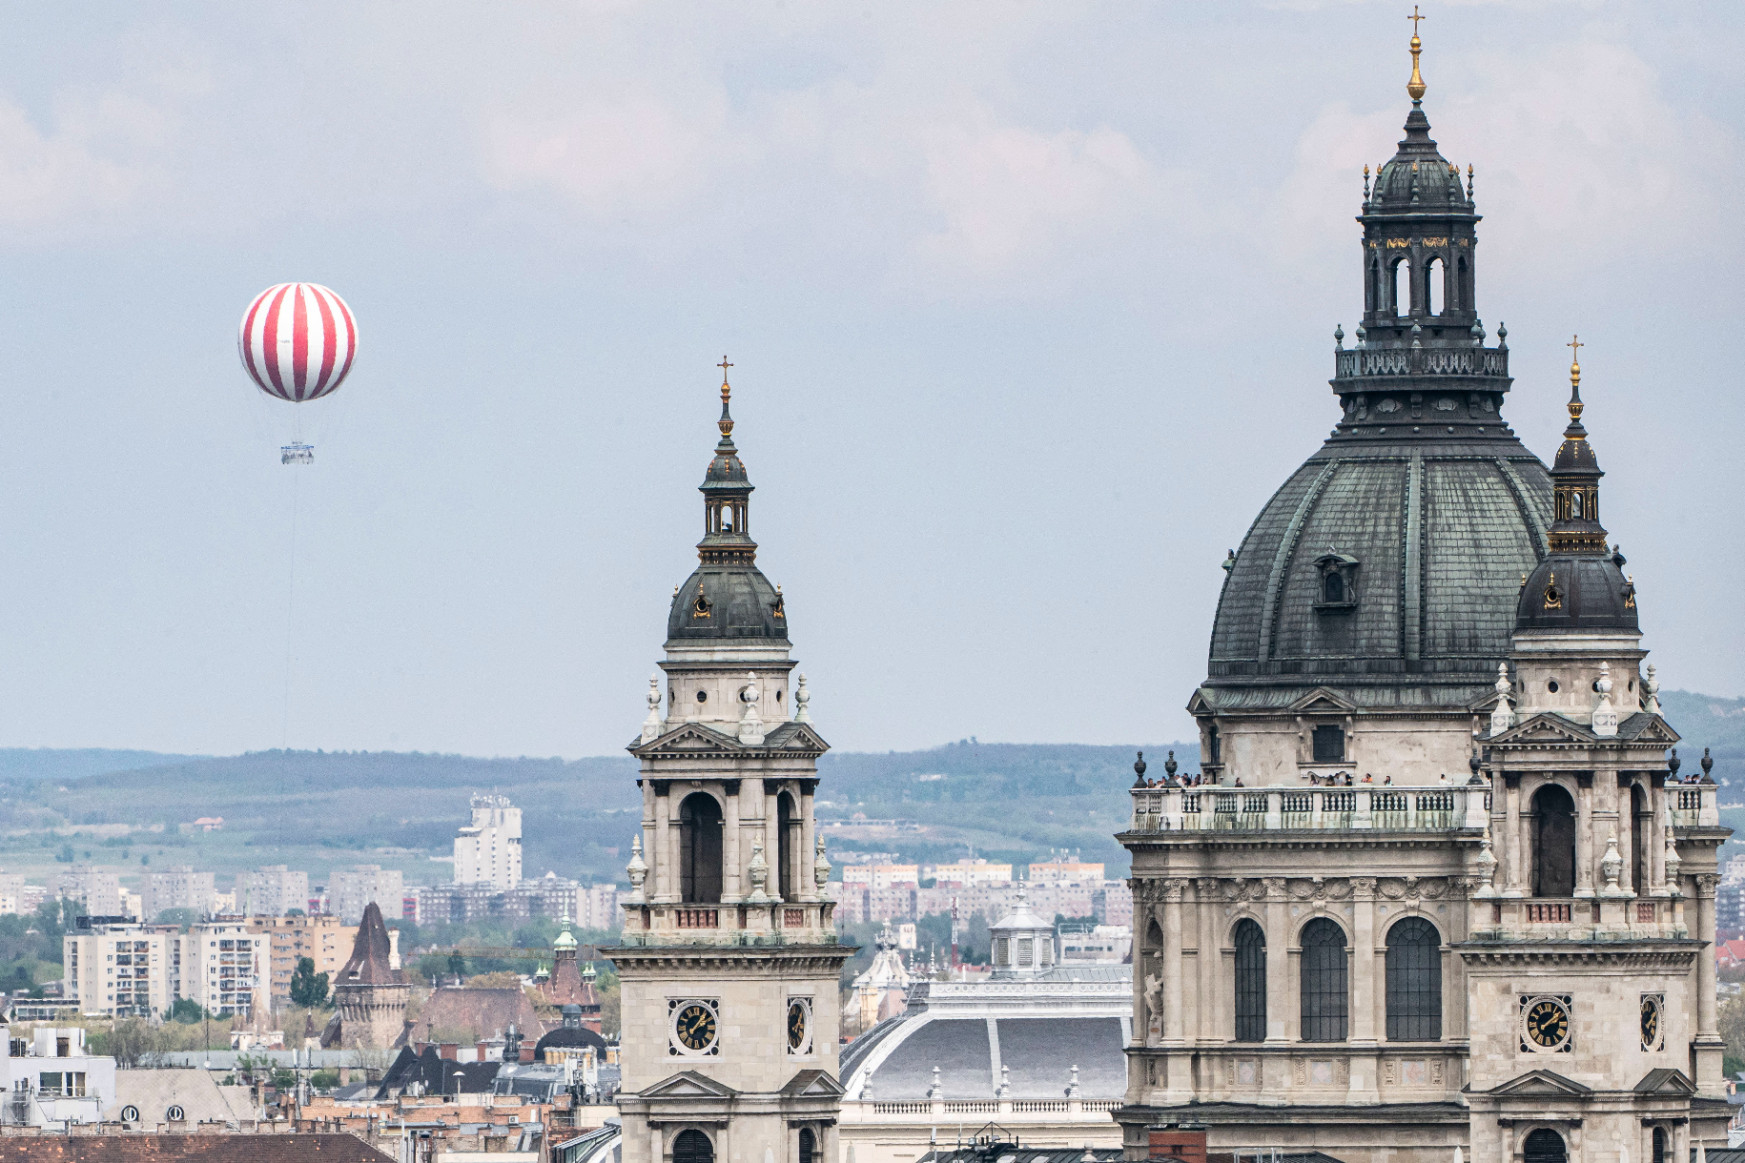 Szinte észrevétlenül olvad bele Budapest látképébe az új Ballon